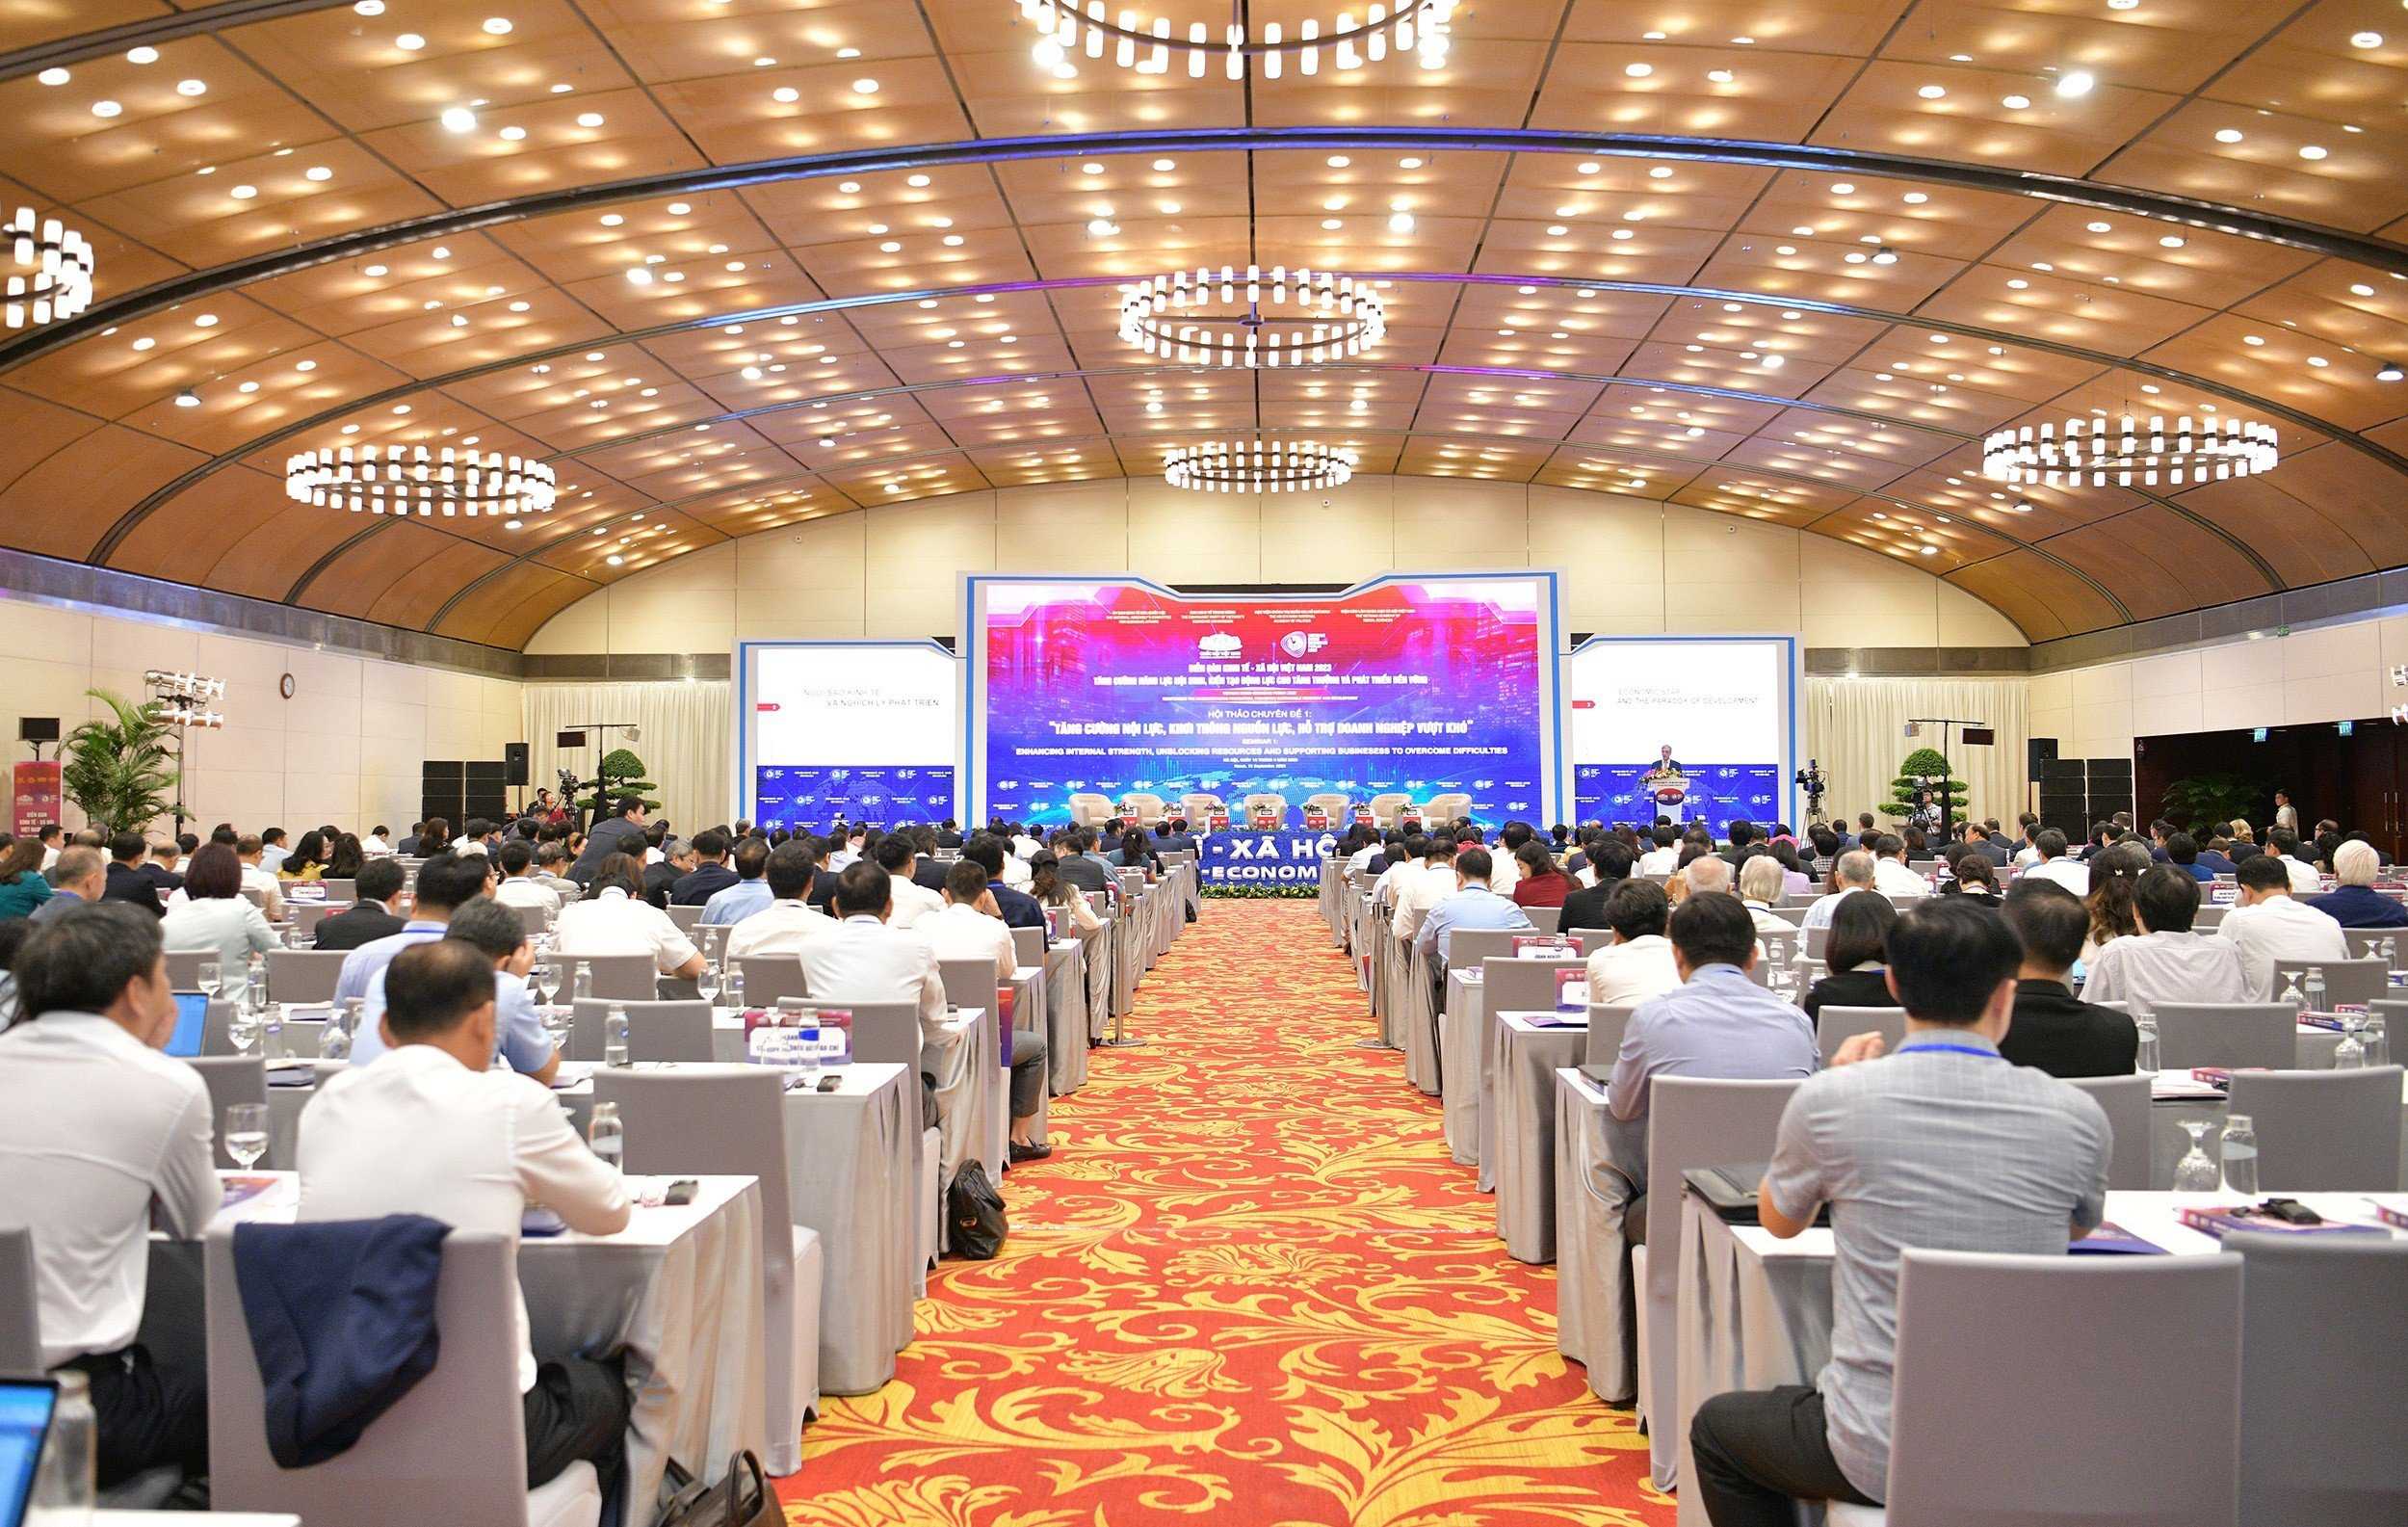 Diễn đàn Kinh tế - Xã hội Việt Nam năm 2023 khai mạc sáng nay (19/9) tại Hà Nội, bao gồm phiên khai mạc và 3 phiên thảo luận chuyên đề